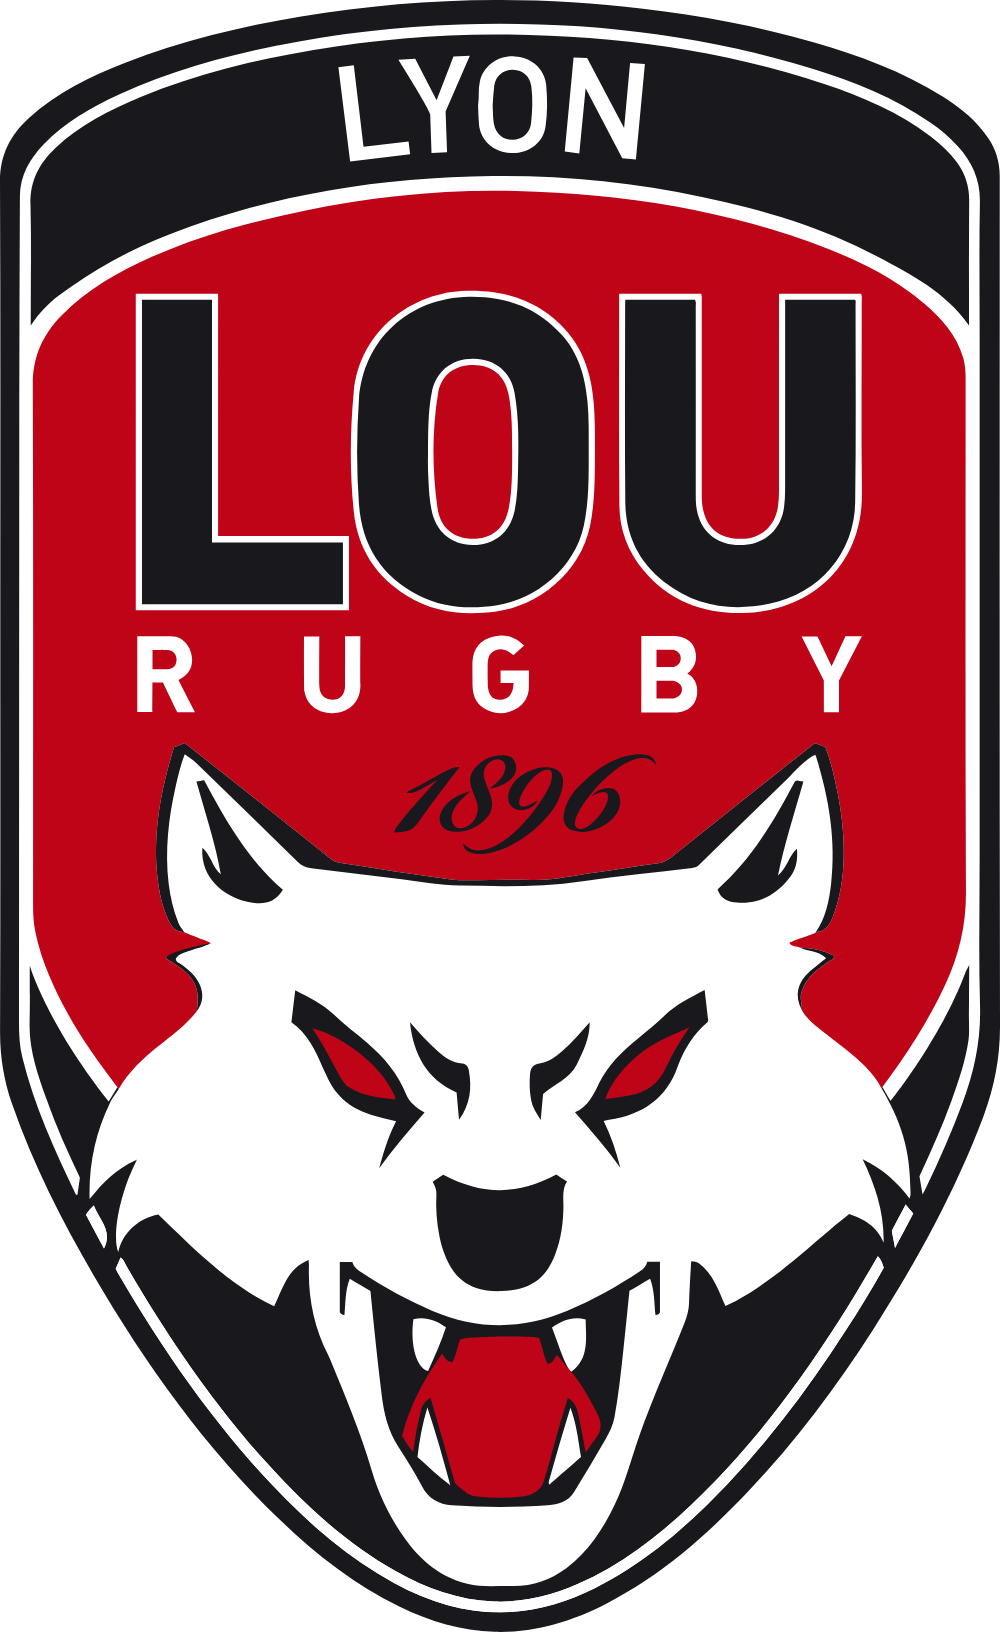 LOU Rugby Logo Logos